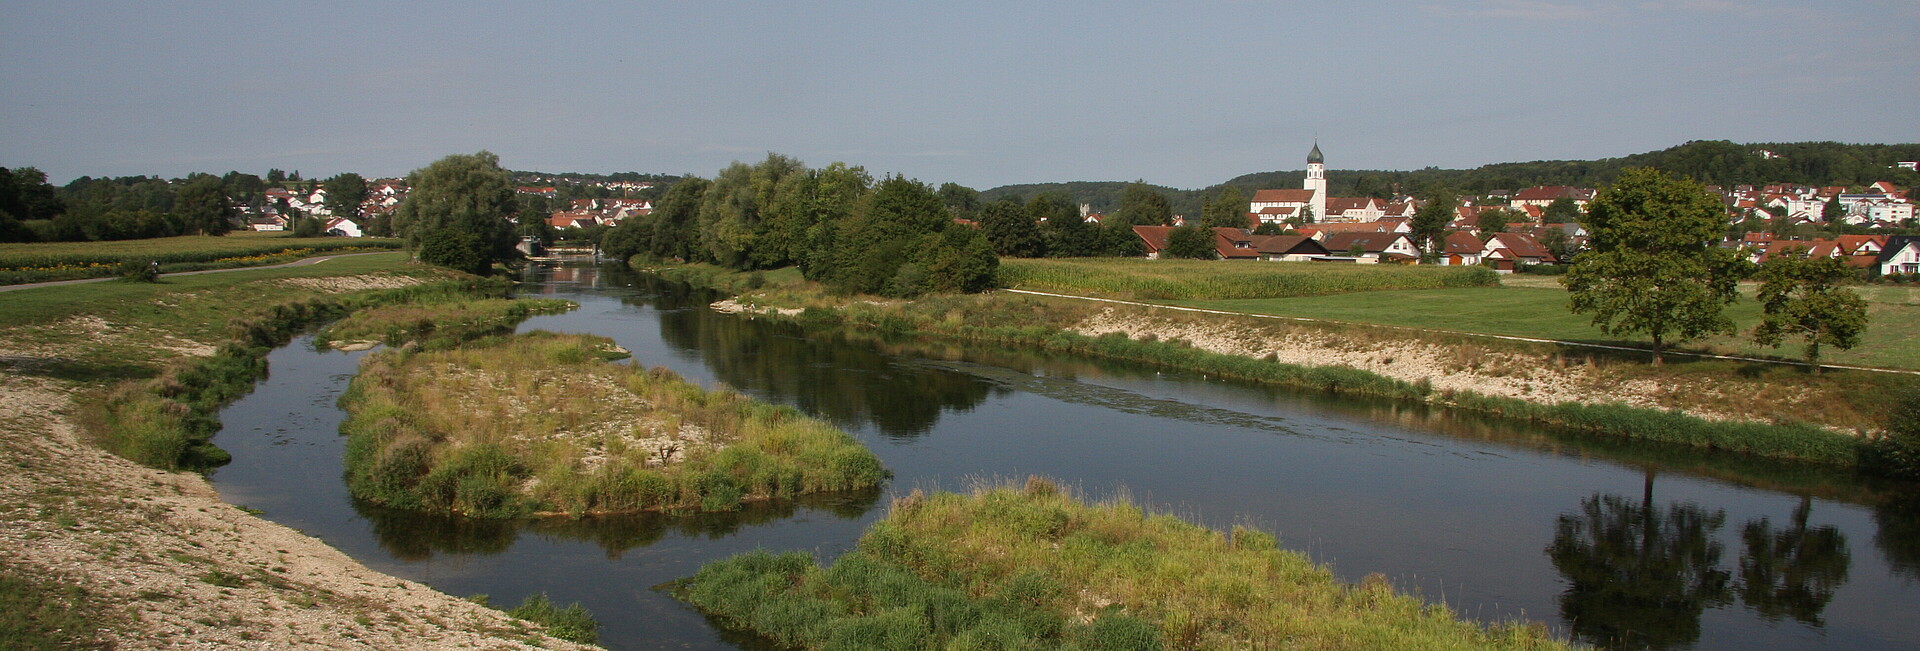 Uferaufweitung der Donau bei Laiz, im Vordergrund sieht man den Fluss, im Hintergrund die Gemeinde Laiz